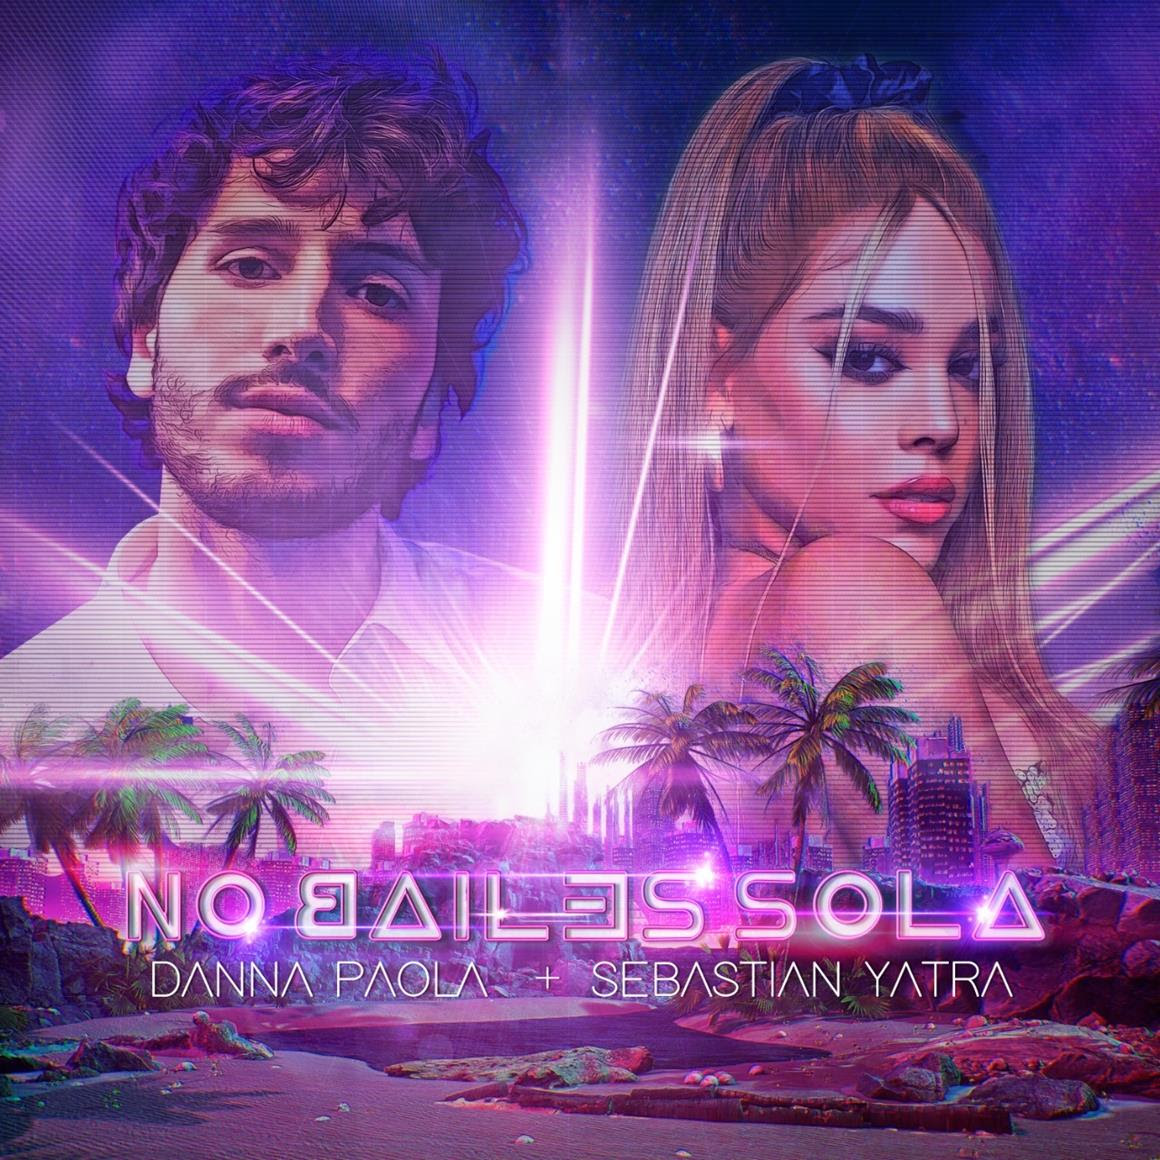 'No bailes sola' es la primera colaboración de Danna Paola y Sebastián Yatra.